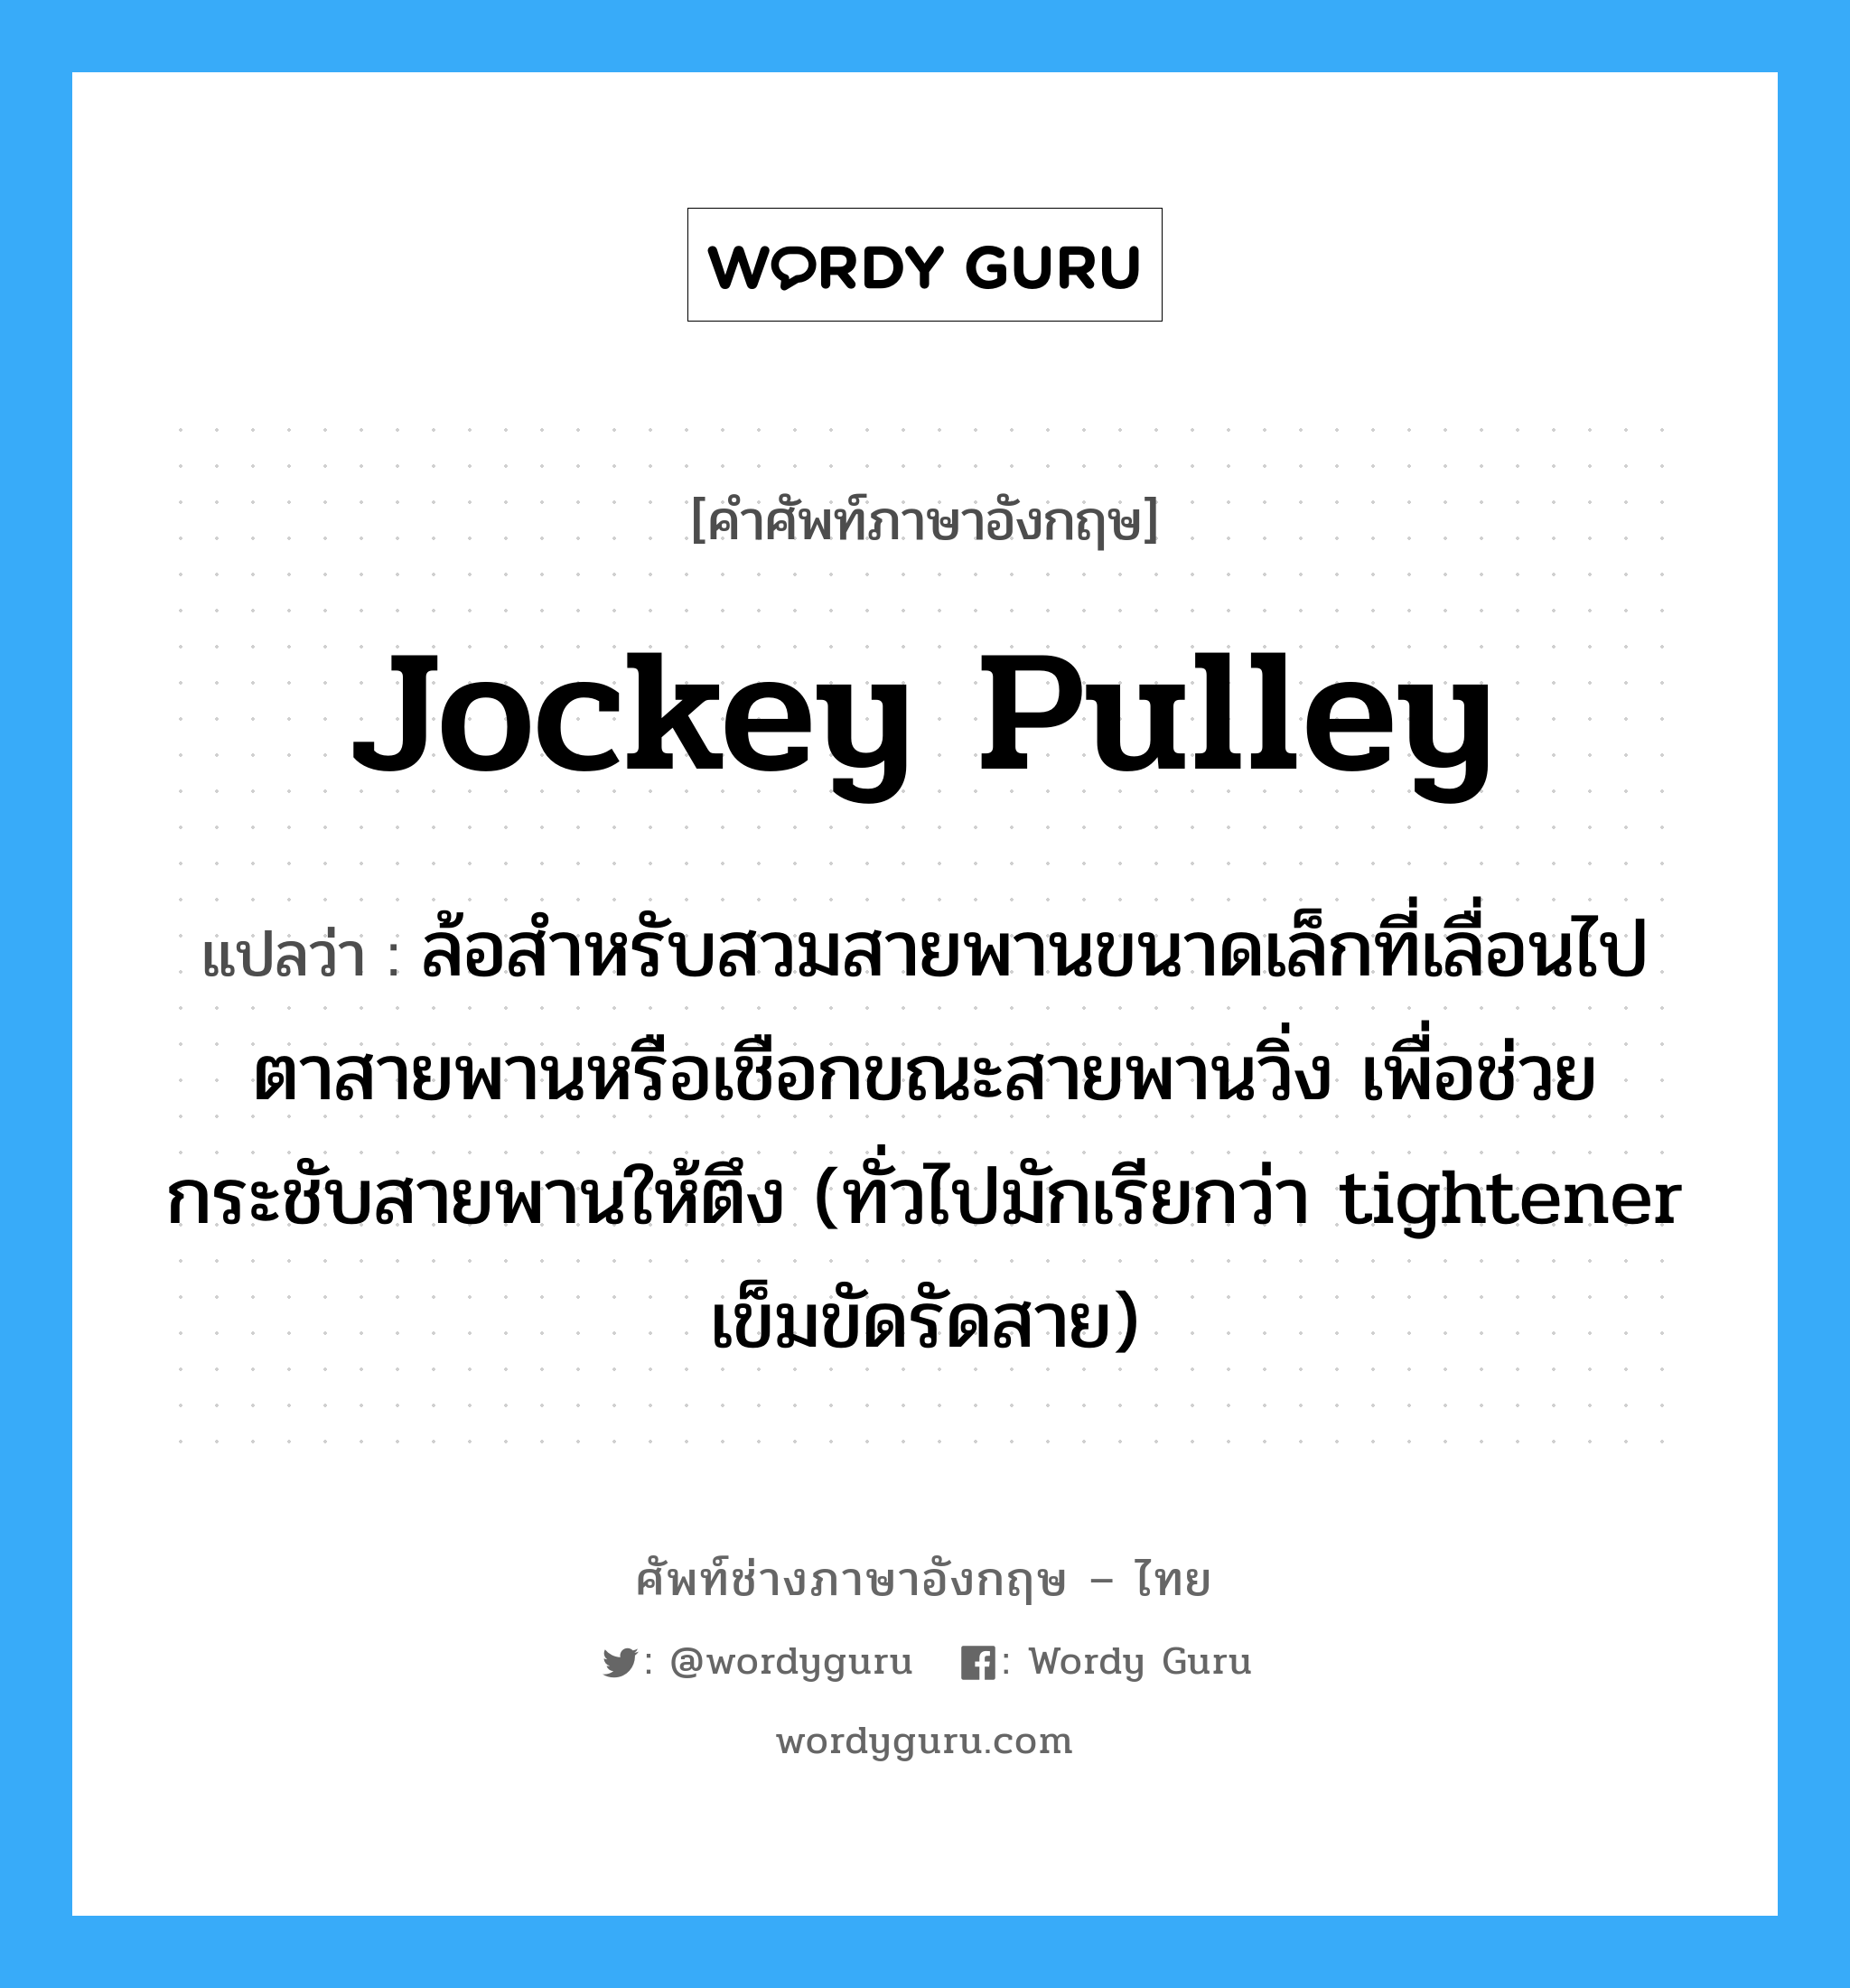 jockey pulley แปลว่า?, คำศัพท์ช่างภาษาอังกฤษ - ไทย jockey pulley คำศัพท์ภาษาอังกฤษ jockey pulley แปลว่า ล้อสำหรับสวมสายพานขนาดเล็กที่เลื่อนไปตาสายพานหรือเชือกขณะสายพานวิ่ง เพื่อช่วยกระชับสายพานให้ตึง (ทั่วไปมักเรียกว่า tightener เข็มขัดรัดสาย)